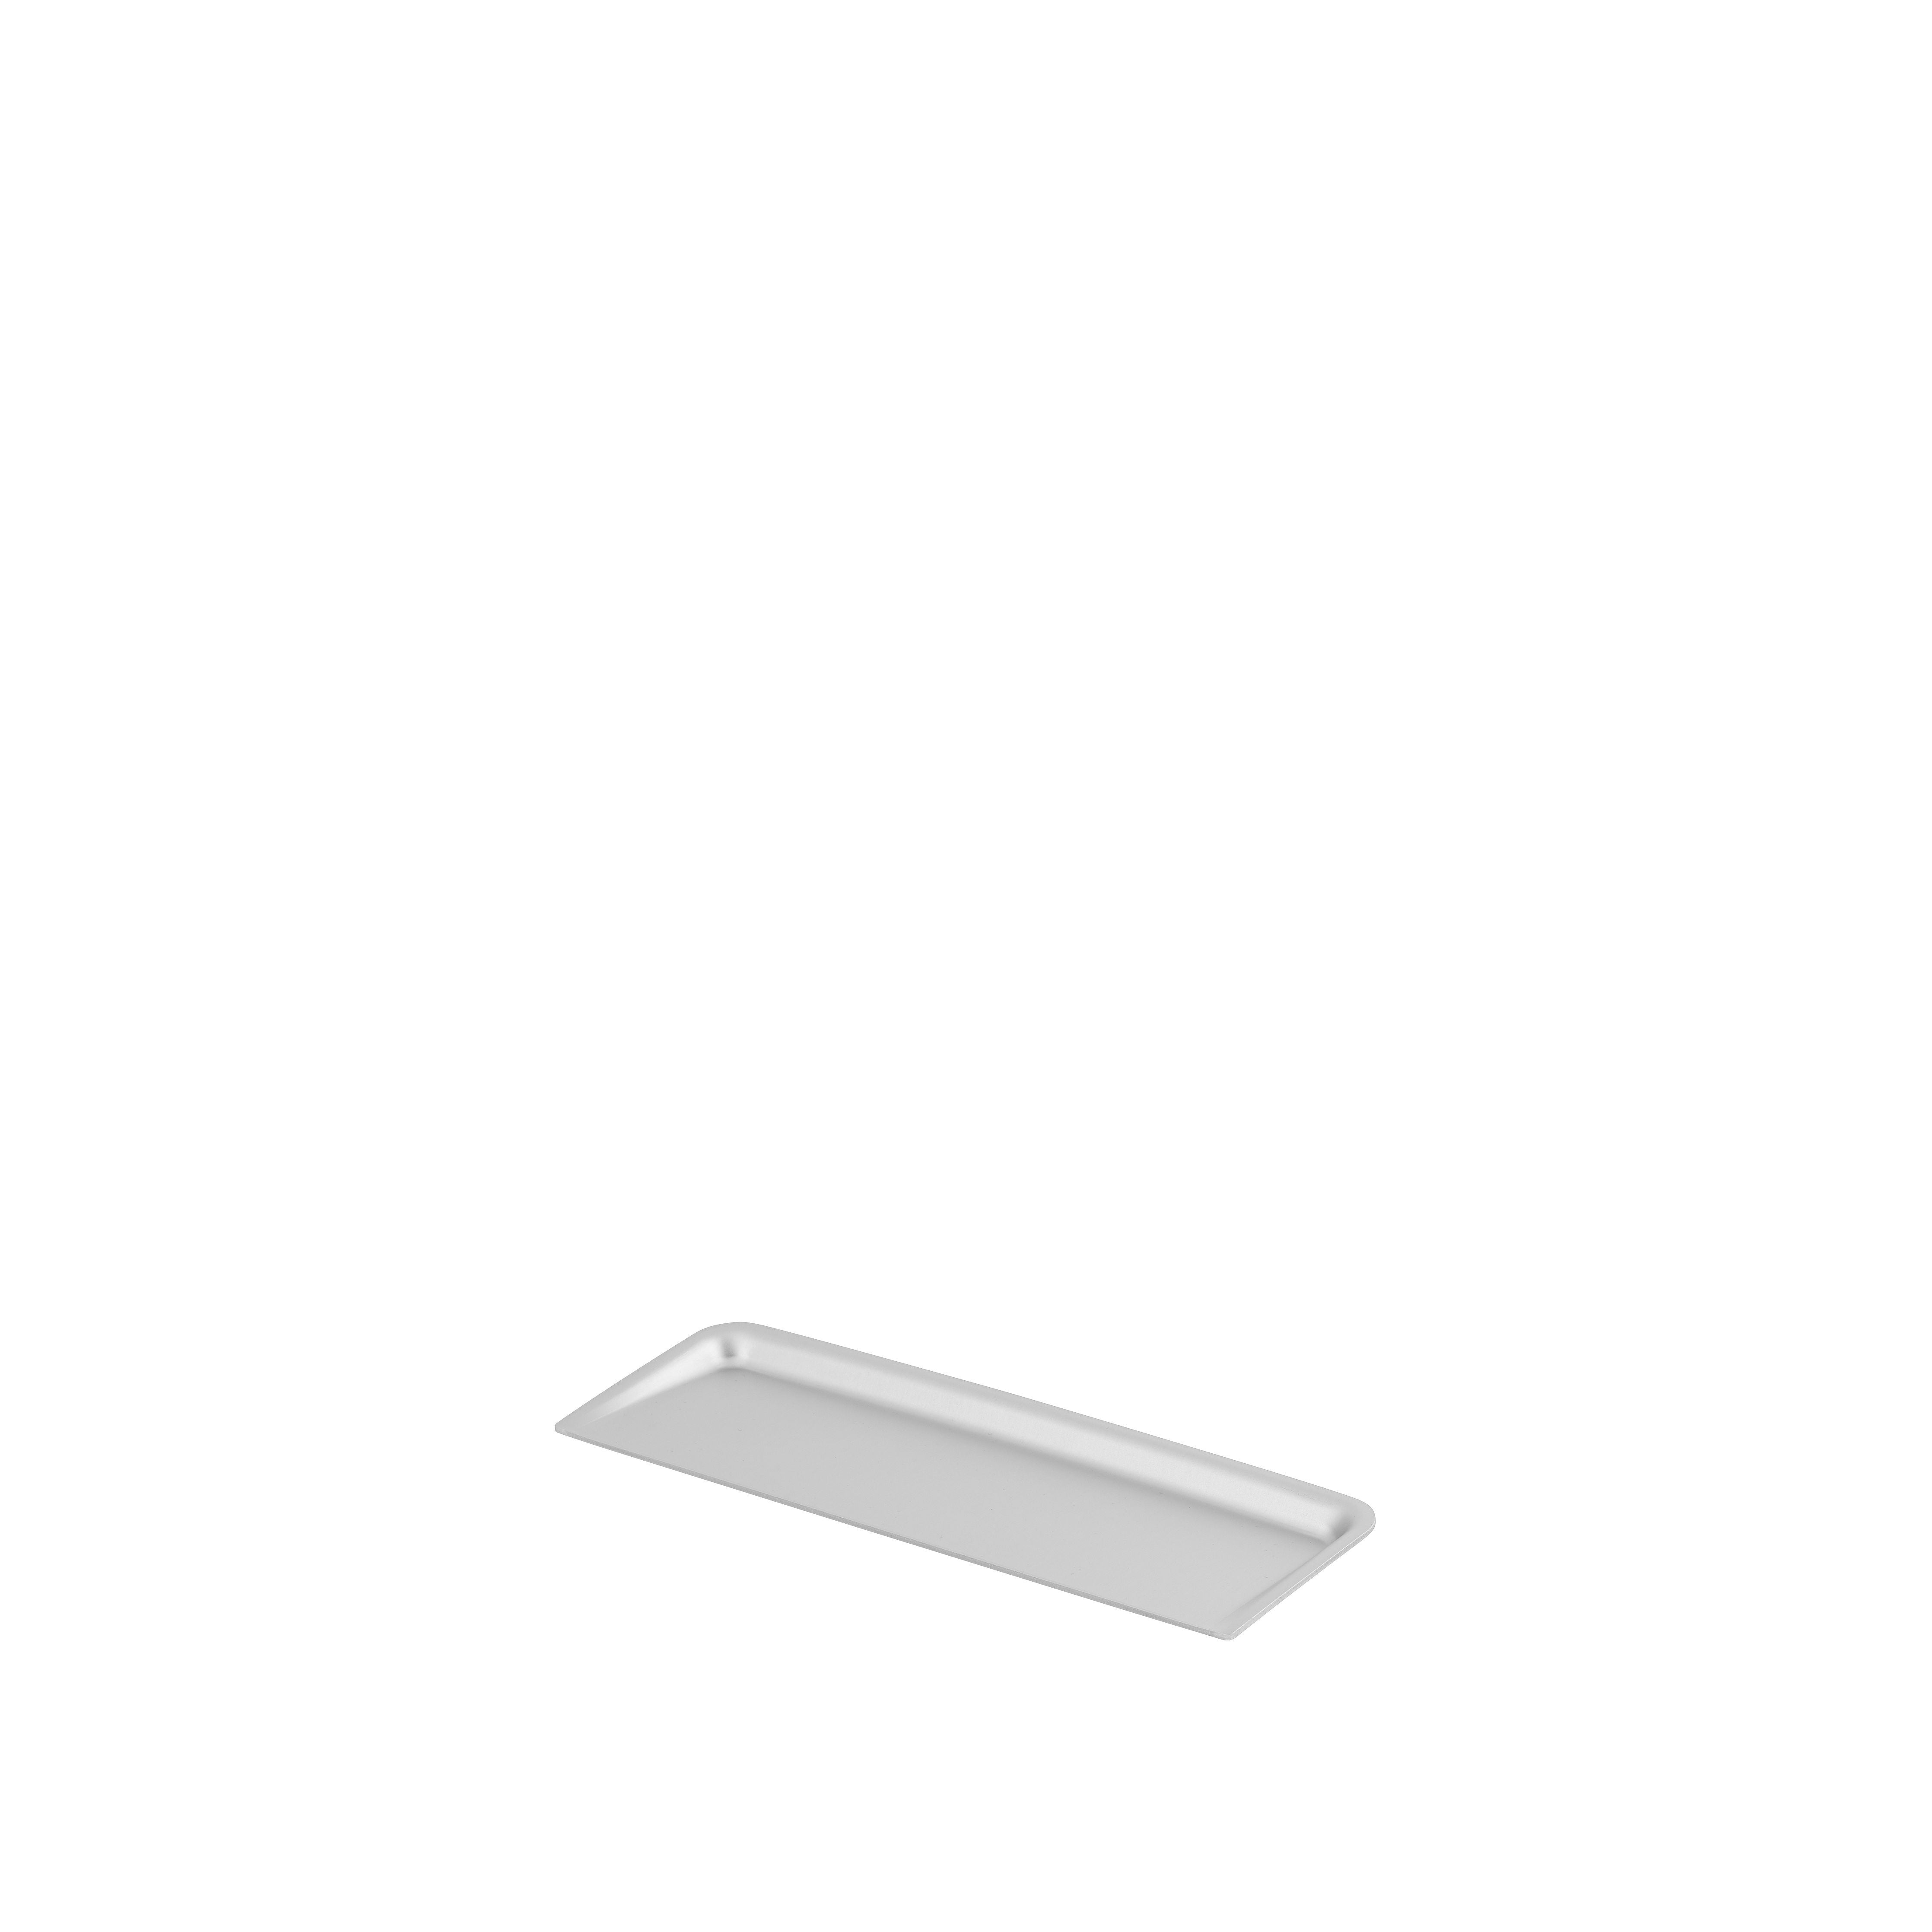 Muuto Desktop -Serie / Deckel 8 x 24 cm / 3,1 x 9,4 ”Aluminium arrangieren